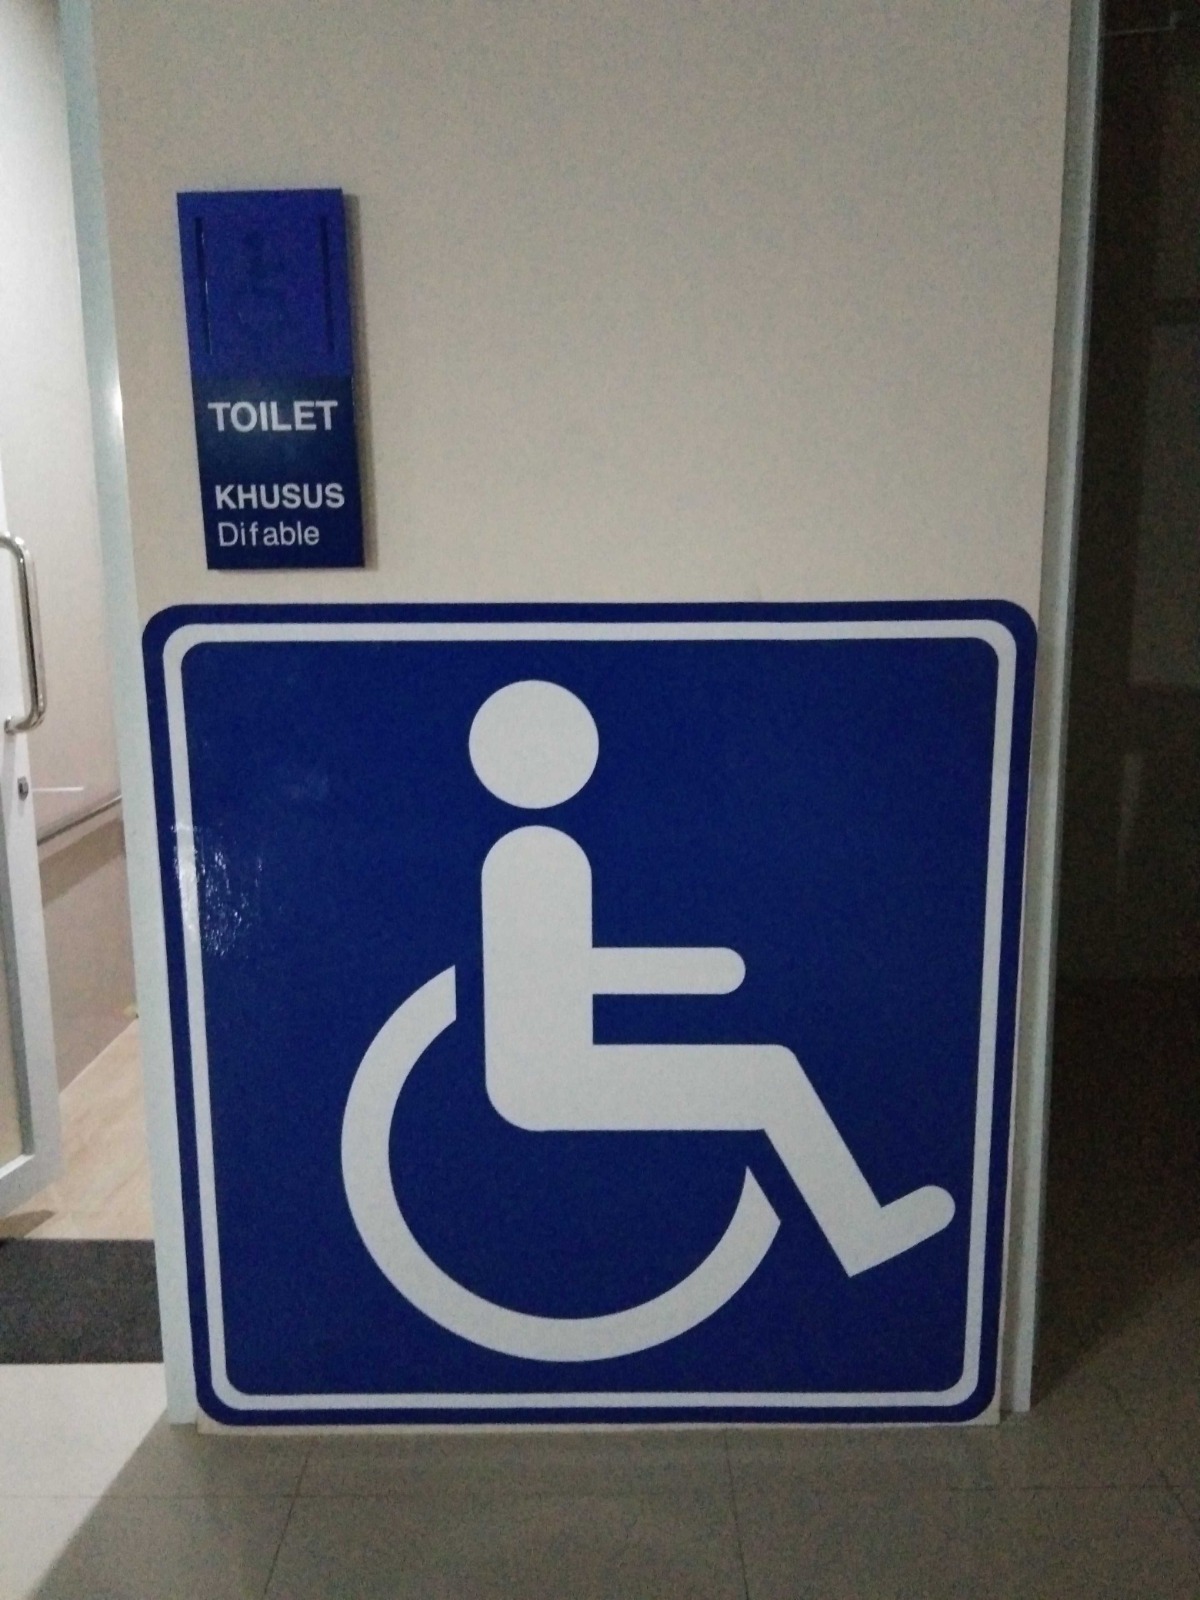 Foto Bandara Tersedia toilet khusus difable